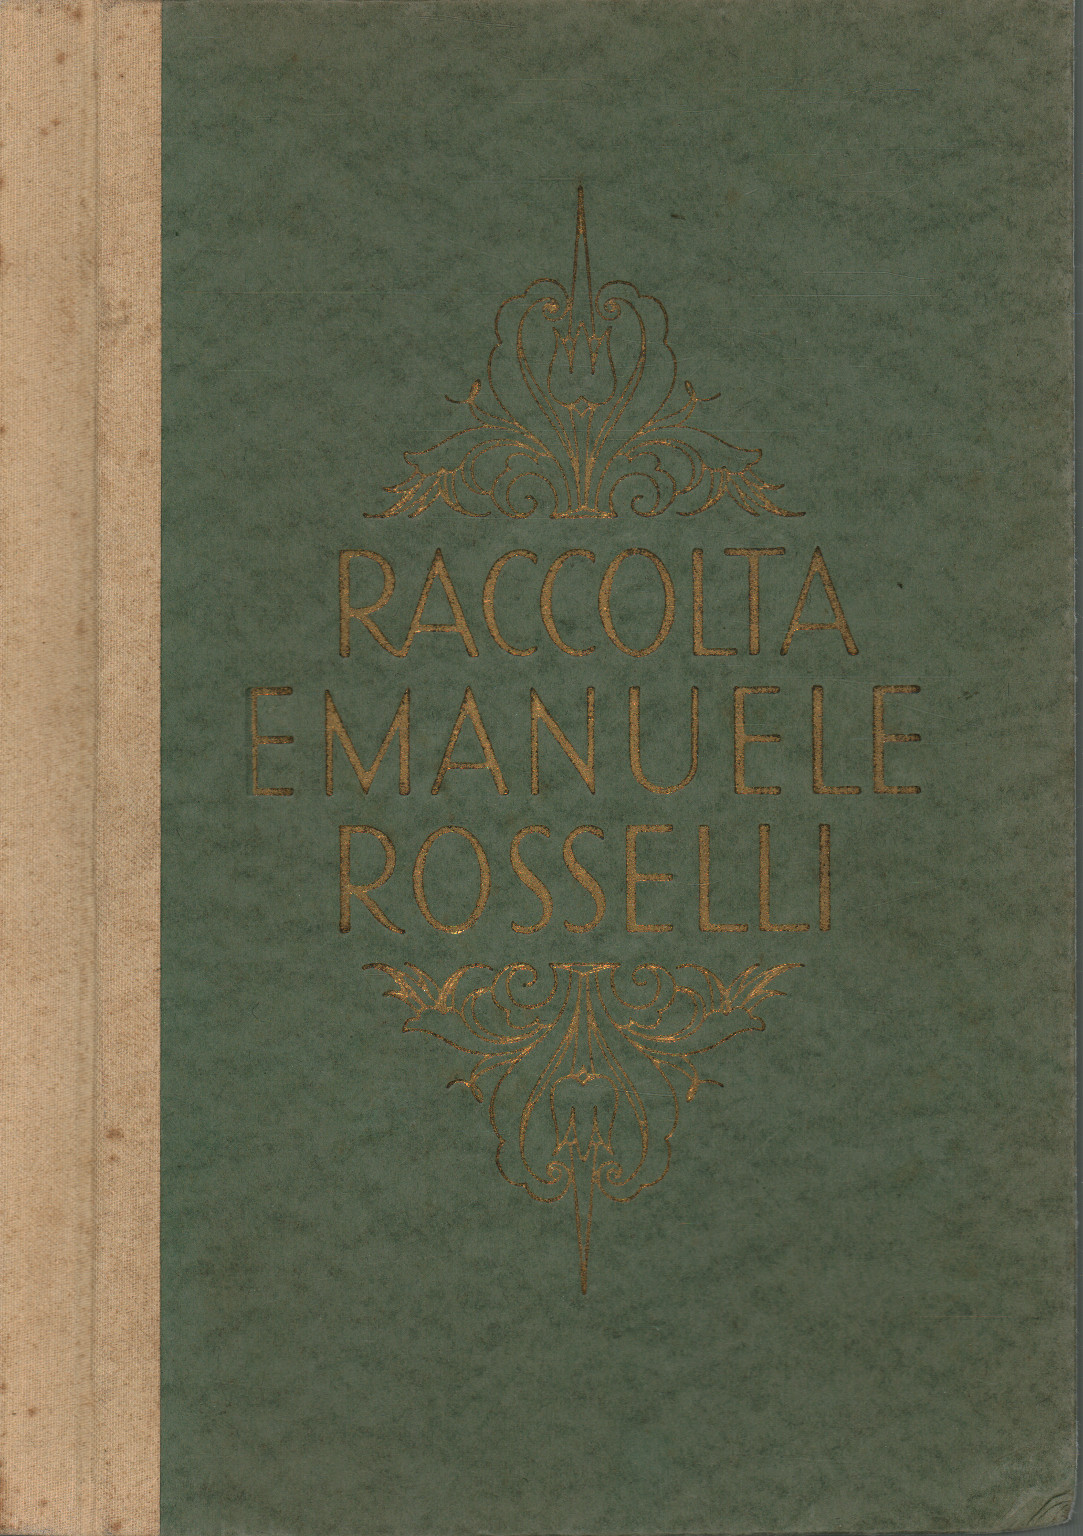 Colección Emanuele Rosselli di Viareggio, s.una.